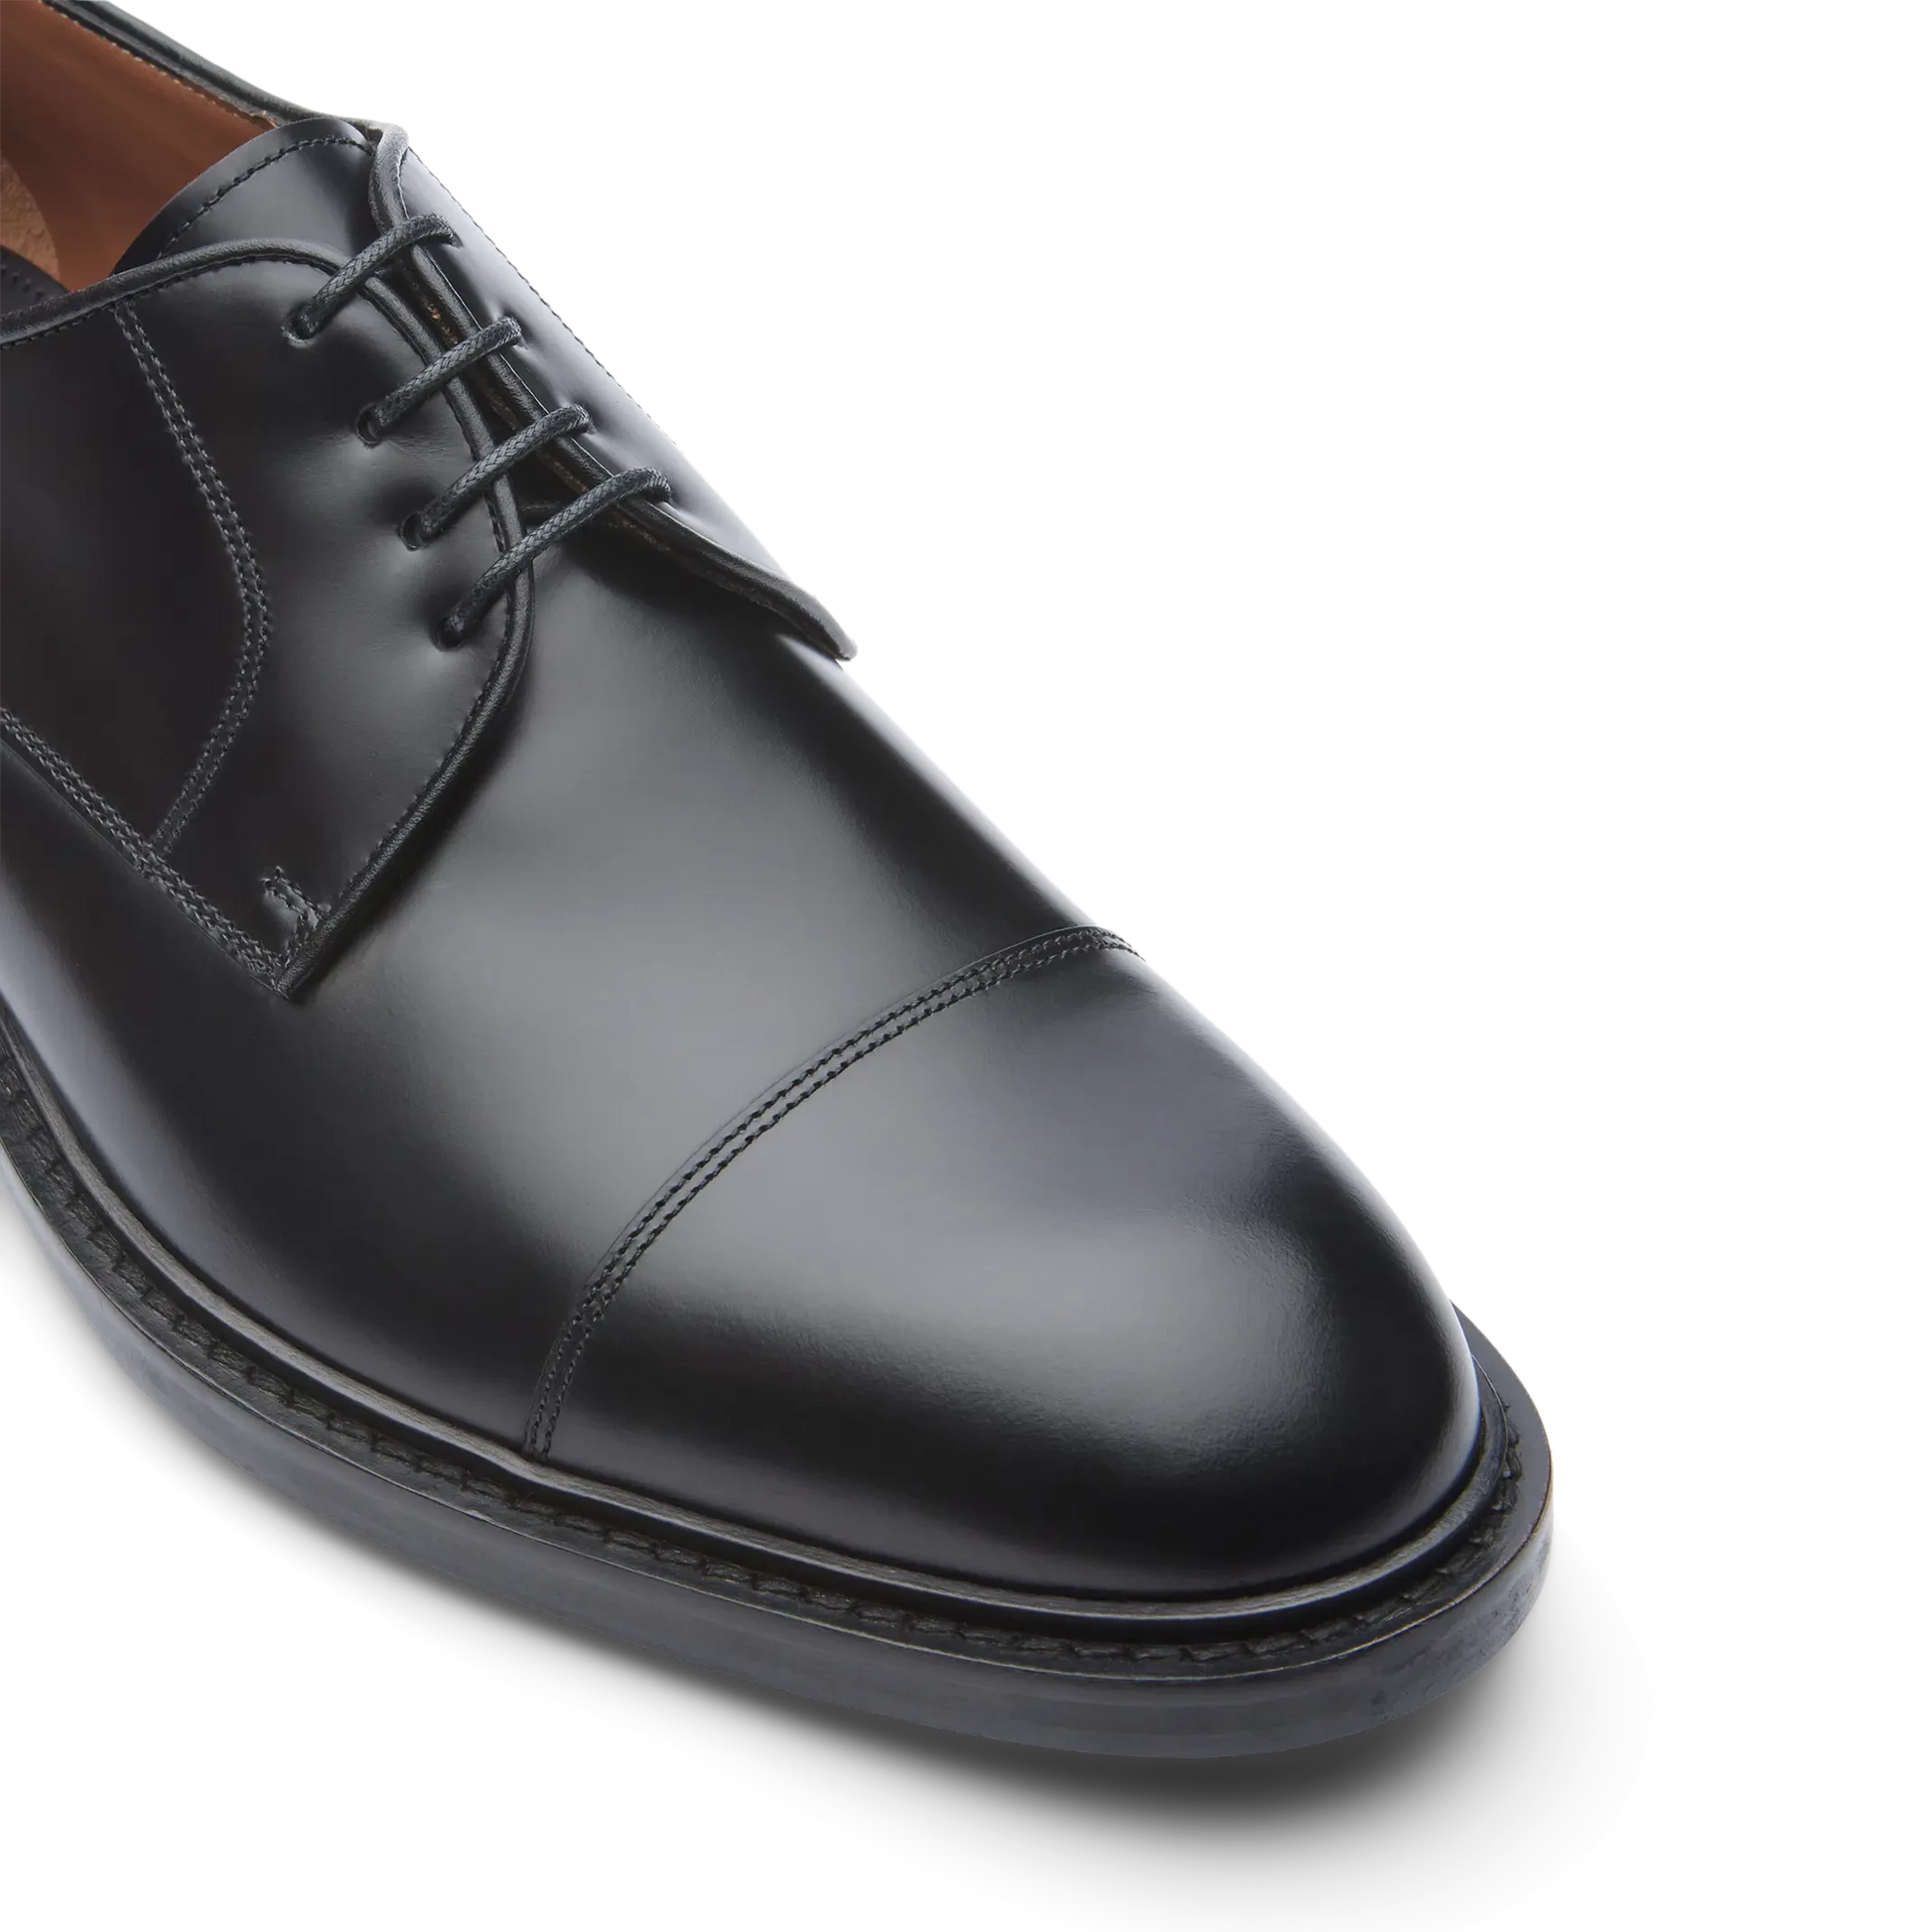 Zapatos Oxford De La Marca Lottusse Para Hombre Modelo Harrys Derbys De Vacuno SemibrillanteEn Color Negro